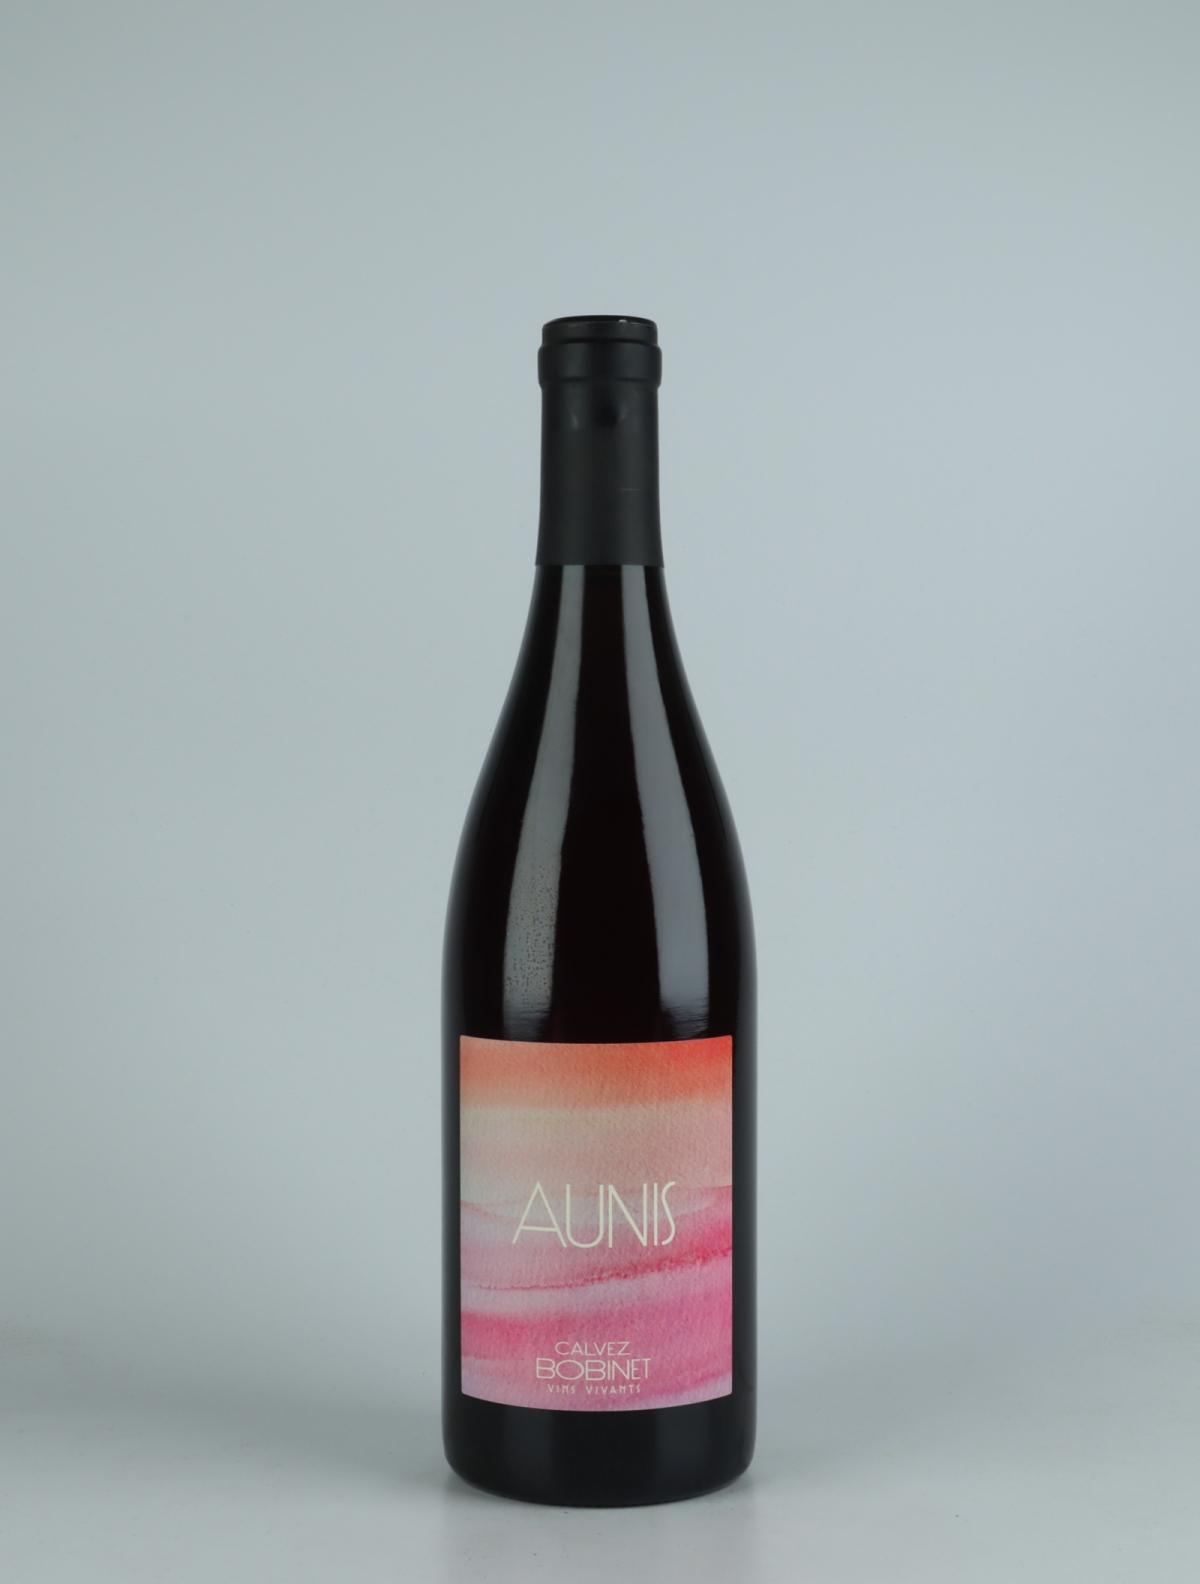 En flaske 2021 Aunis Rødvin fra Domaine Bobinet, Loire i Frankrig